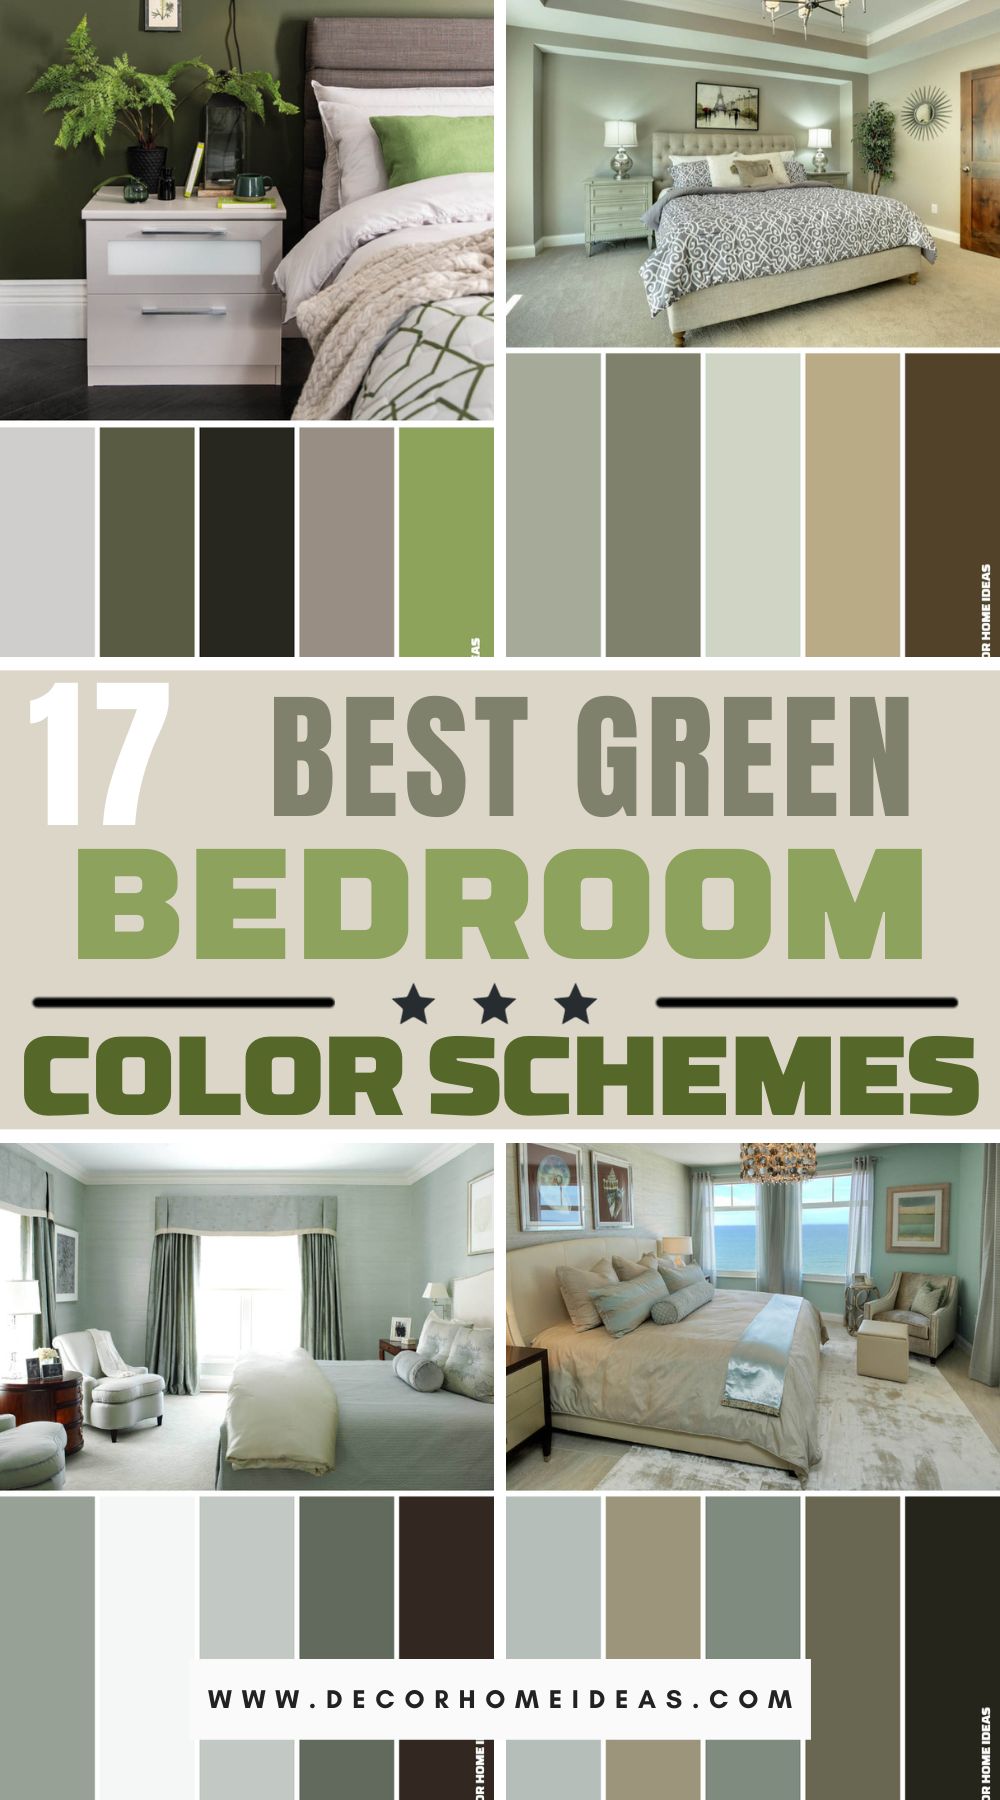 BEST GREEN bedroom color schemes